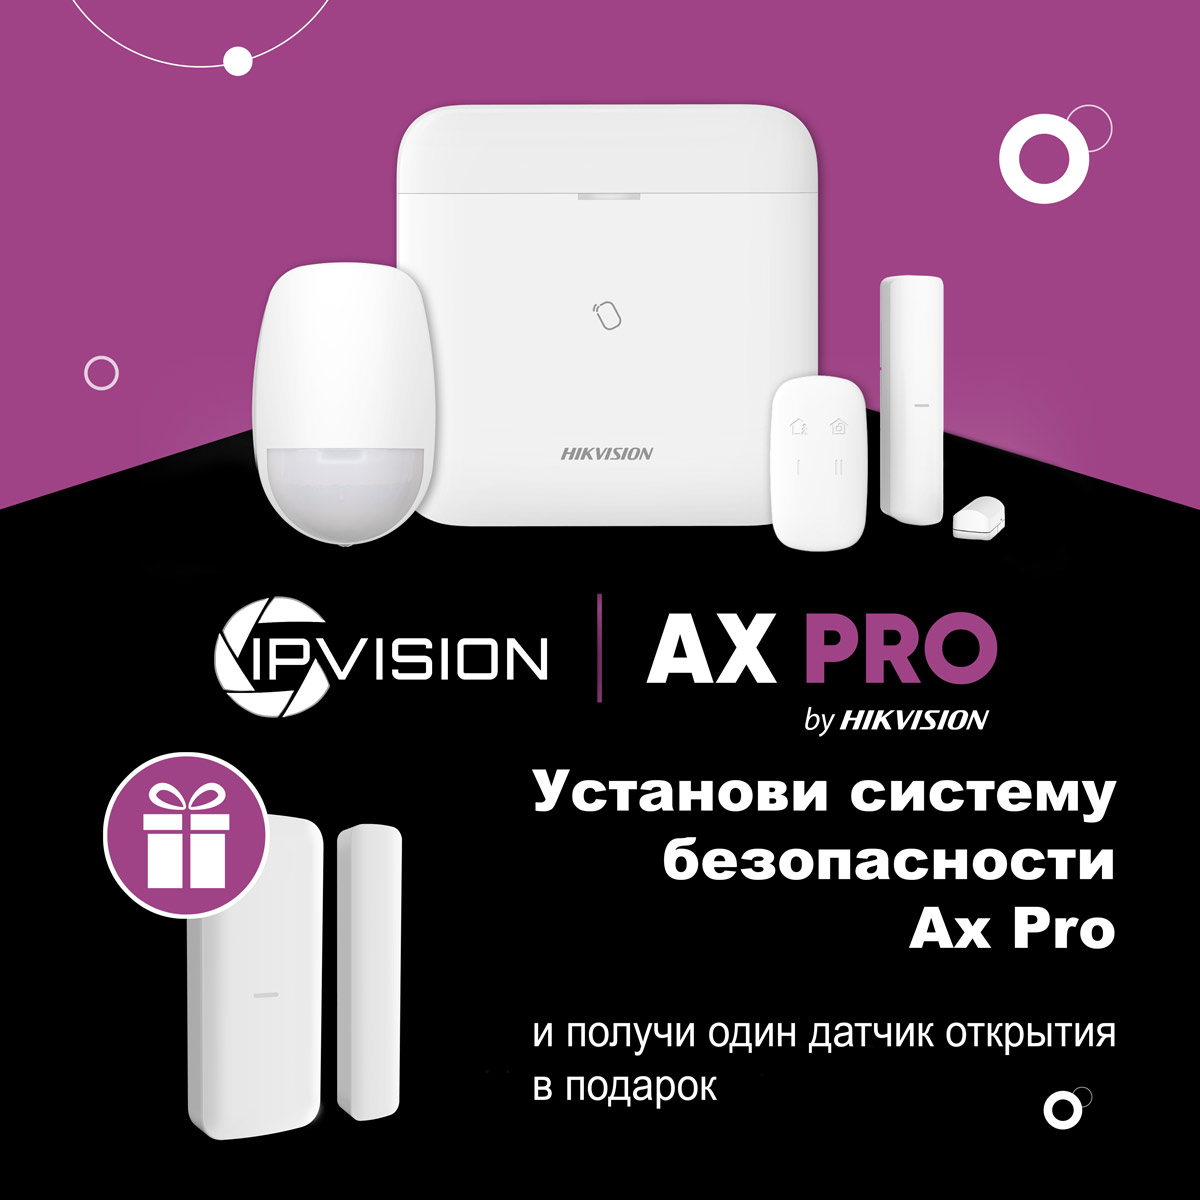 Акция Hikvision AX Pro, датчик открытия в подарок